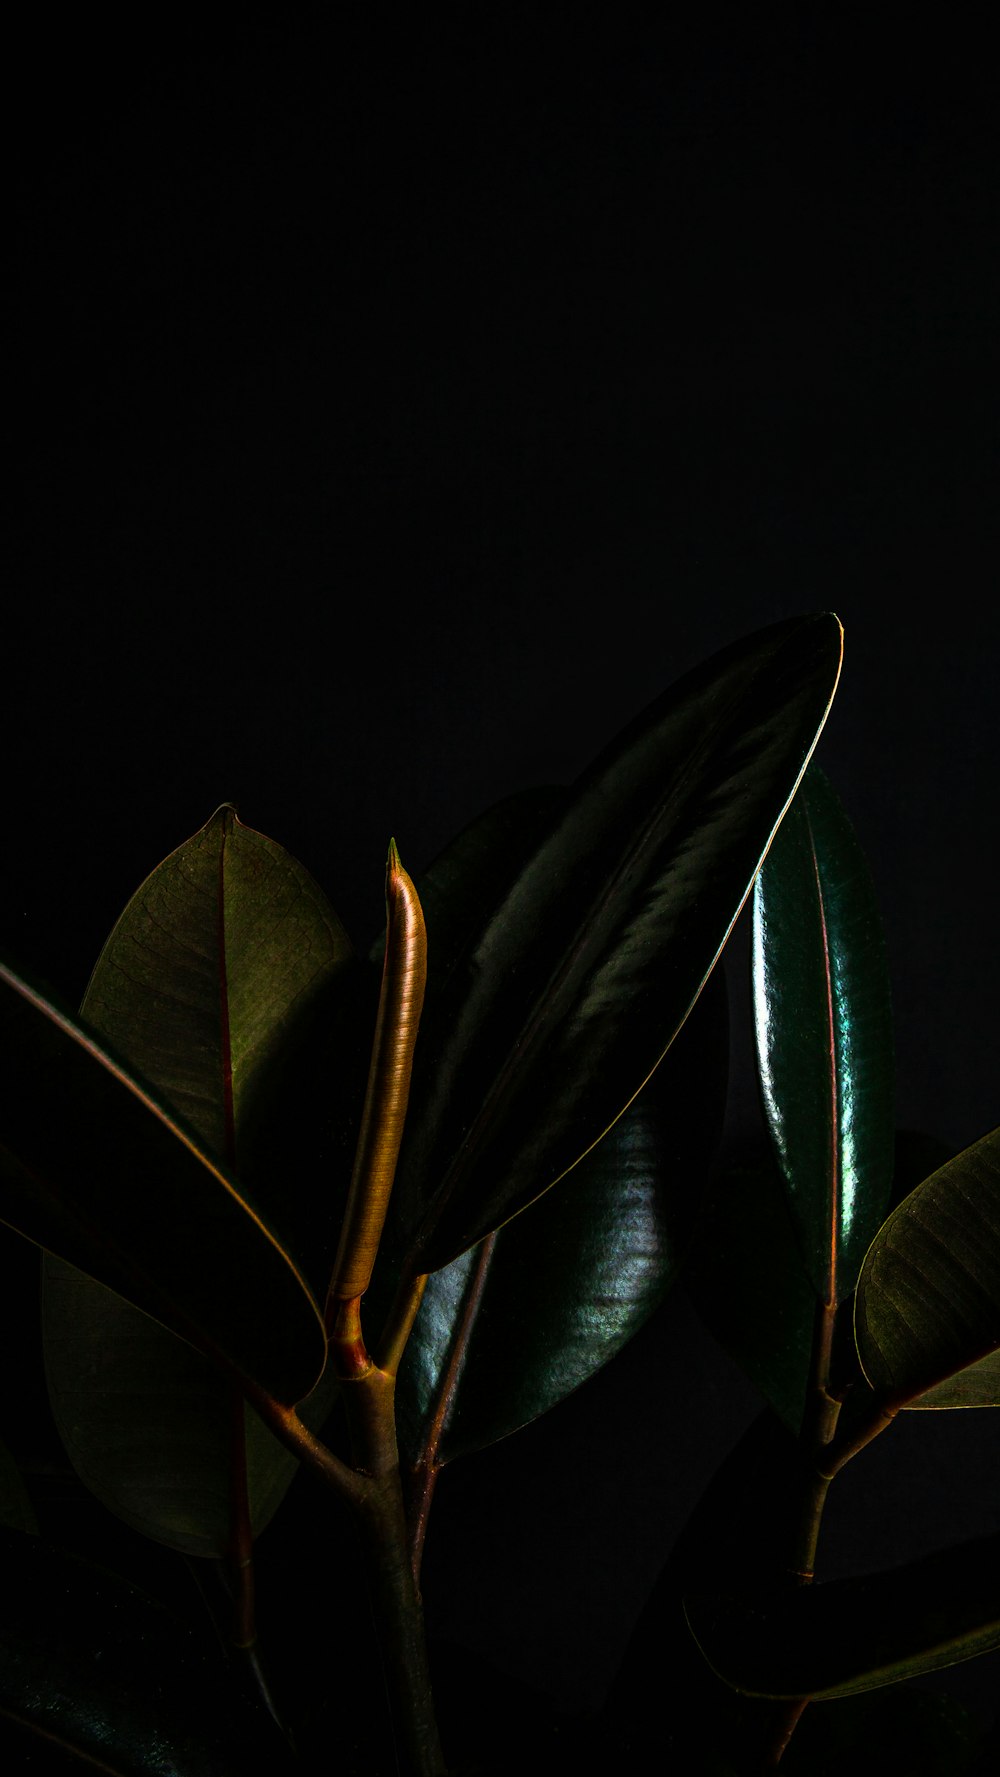 검은 배경의 녹색 잎